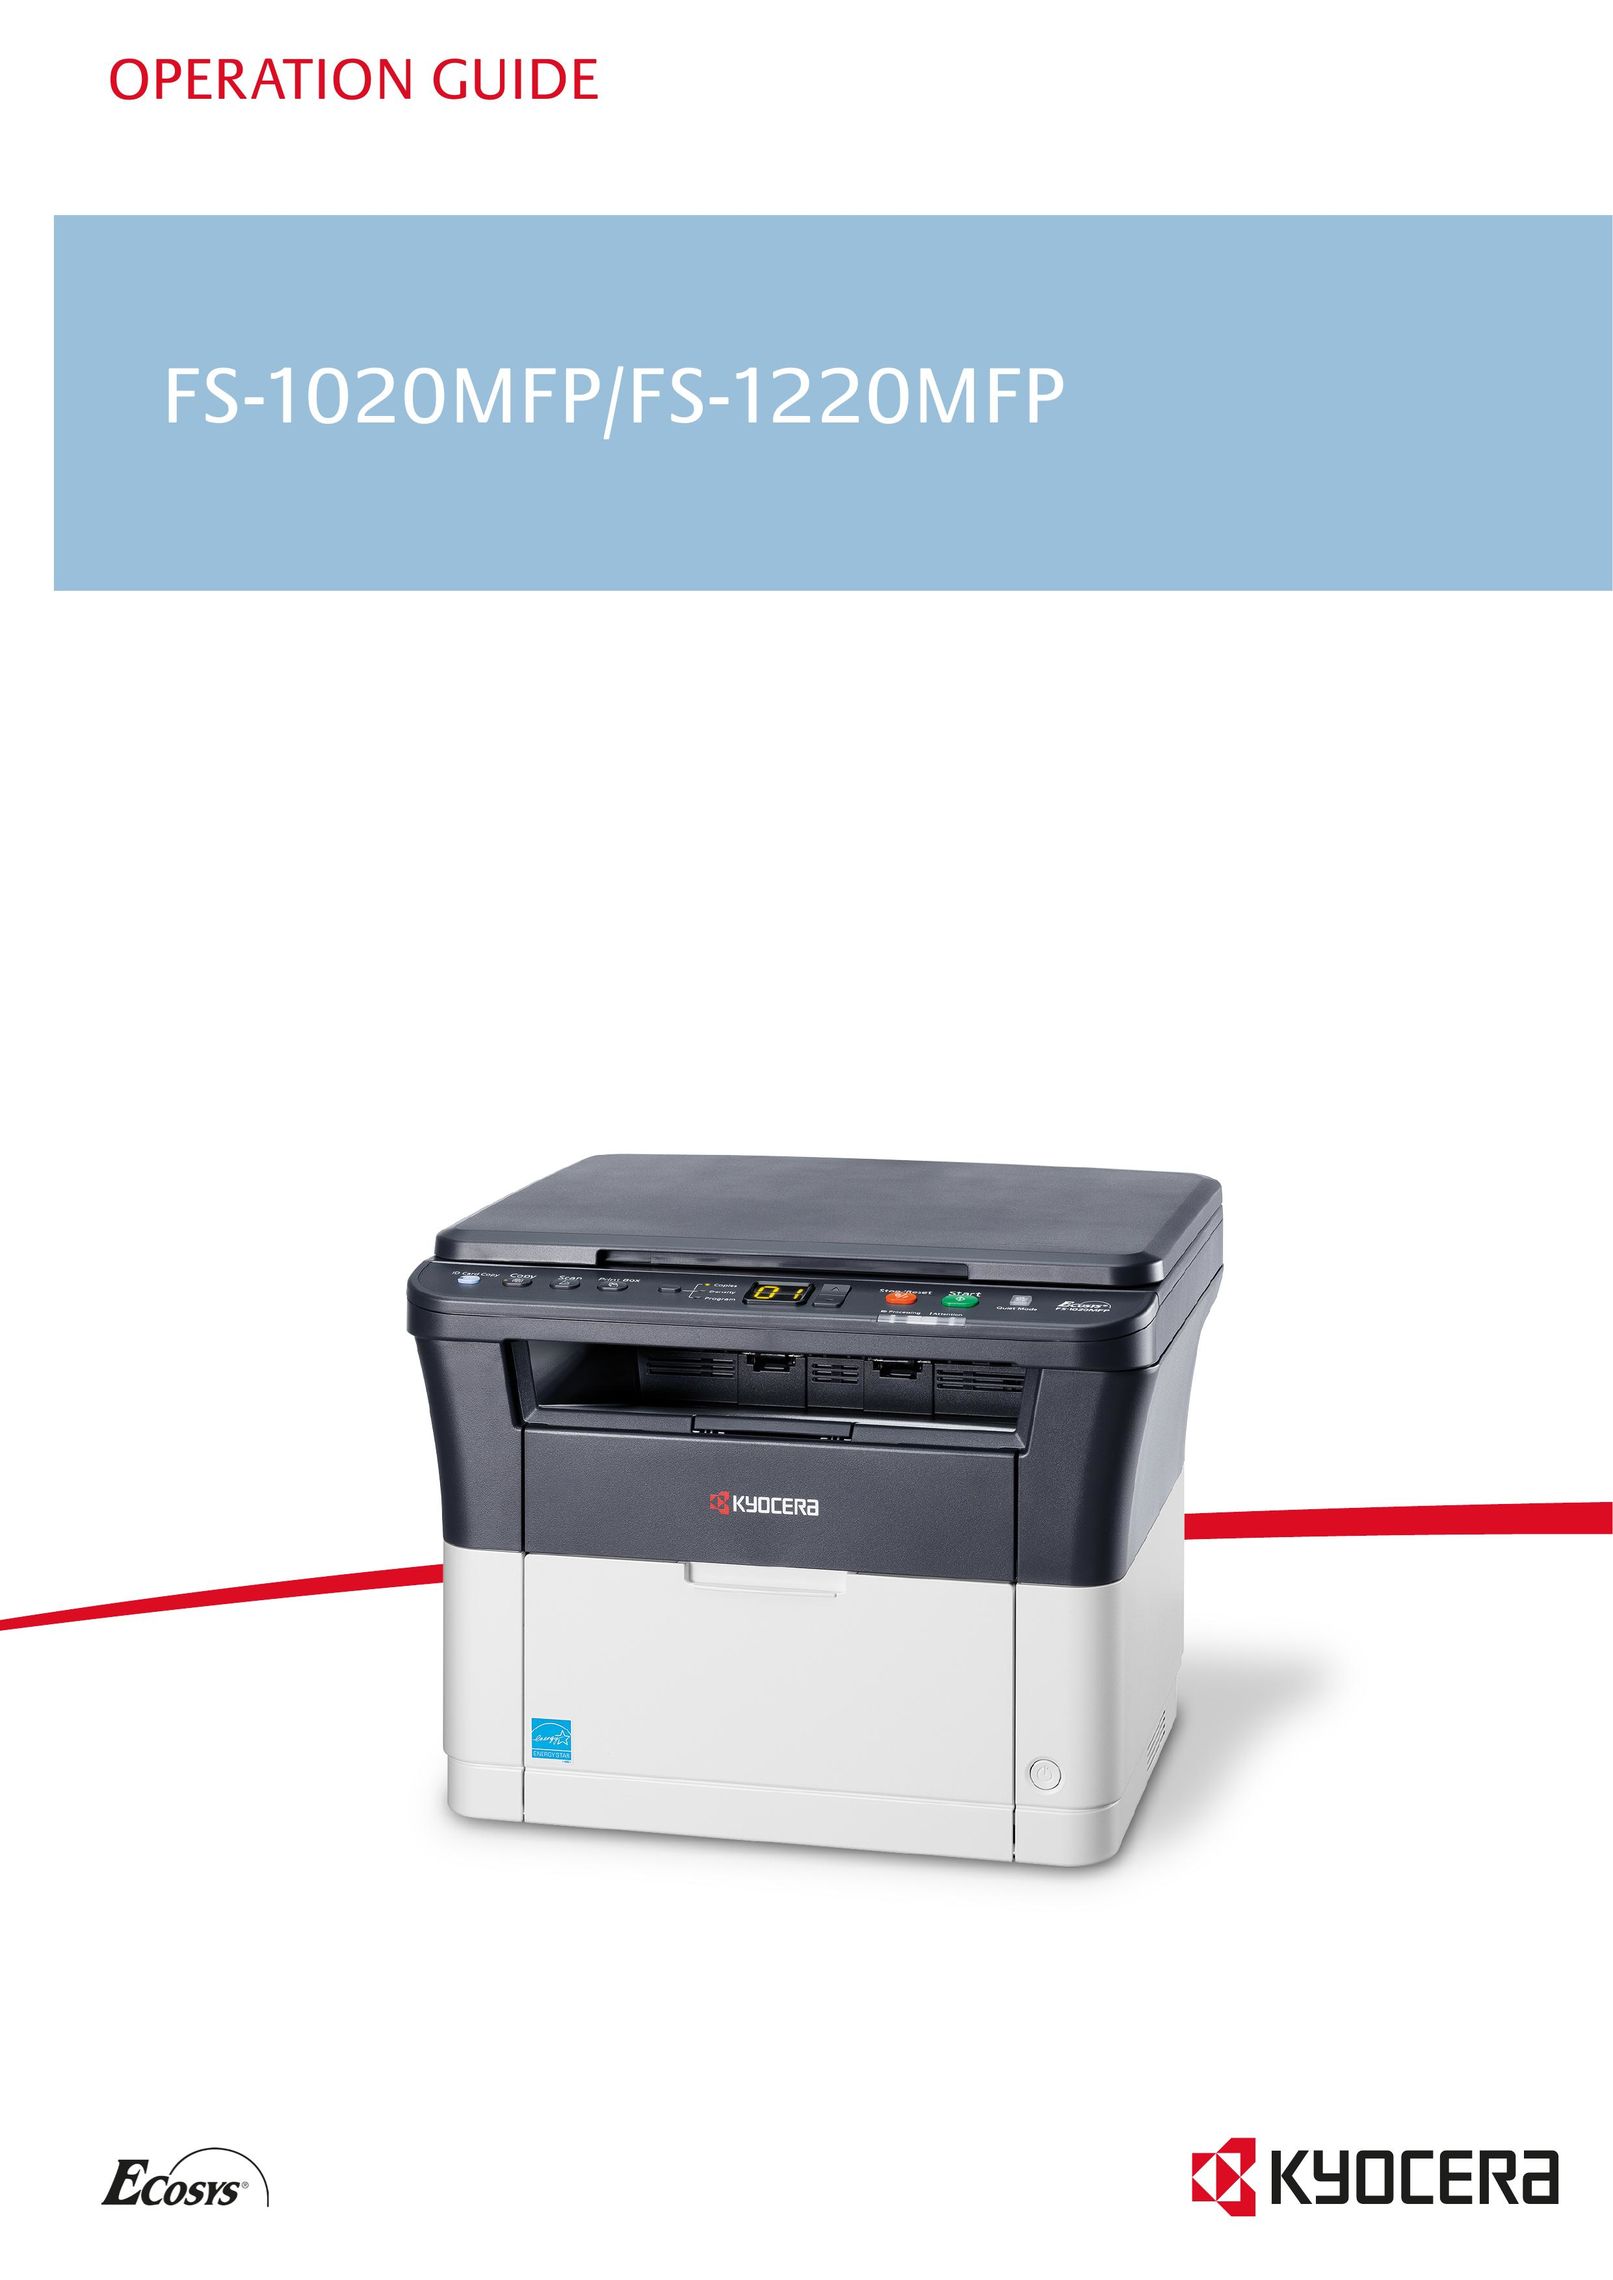 Kyocera FS-1220MFP All in One Printer User Manual